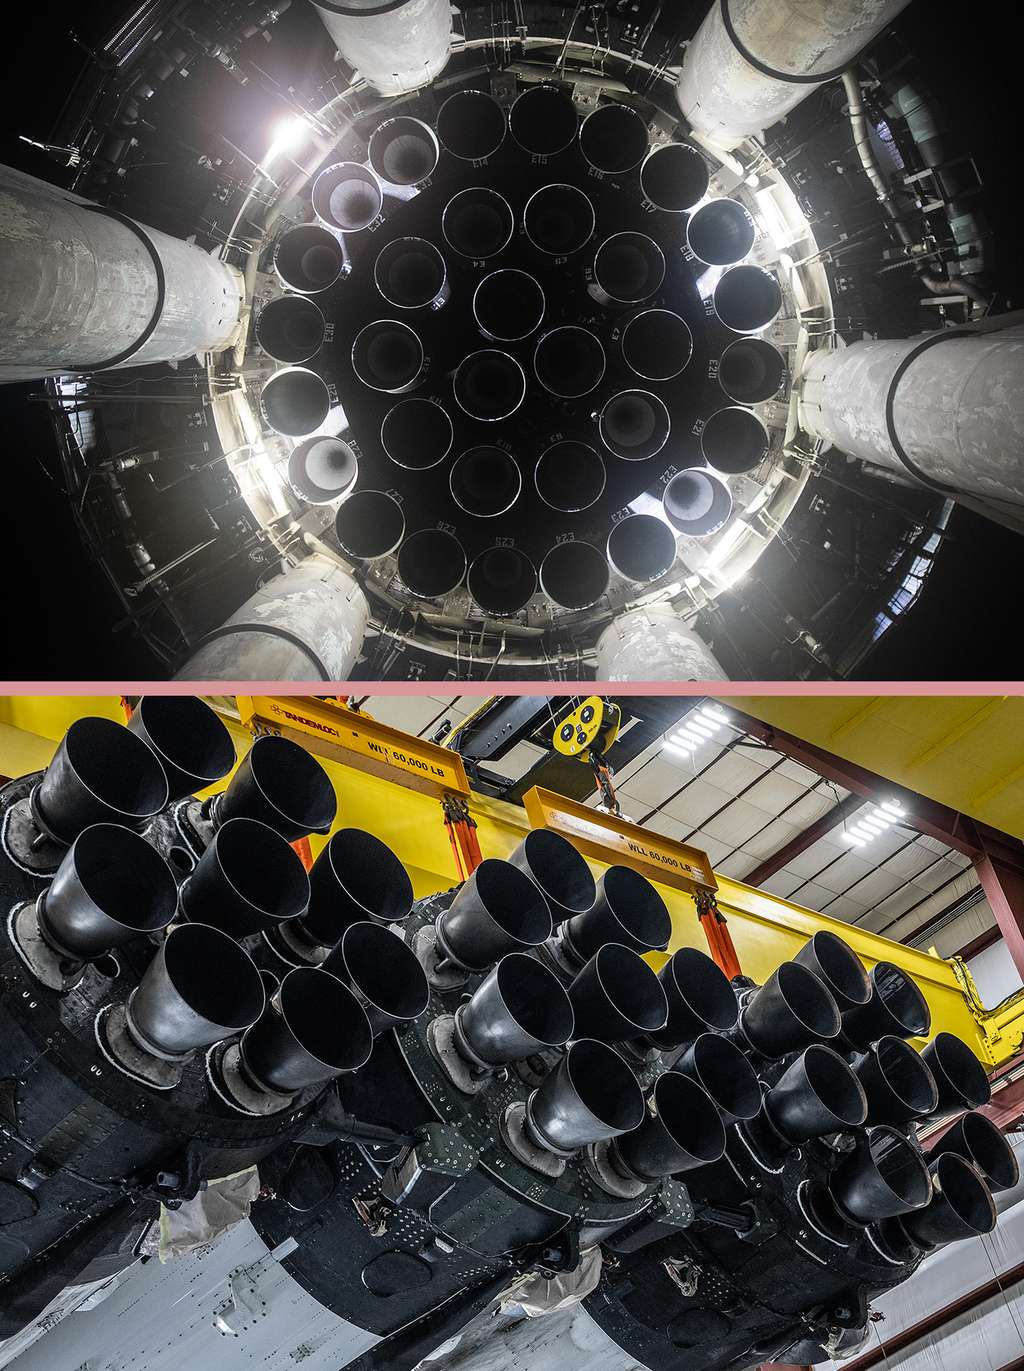 Les 33 moteurs du Super Hevay sont logés dans l'étage dans une configuration très différente des 27 moteurs de l'étage principal du Falcon Heavy formé de trois étages principaux du Falcon 9. © SpaceX